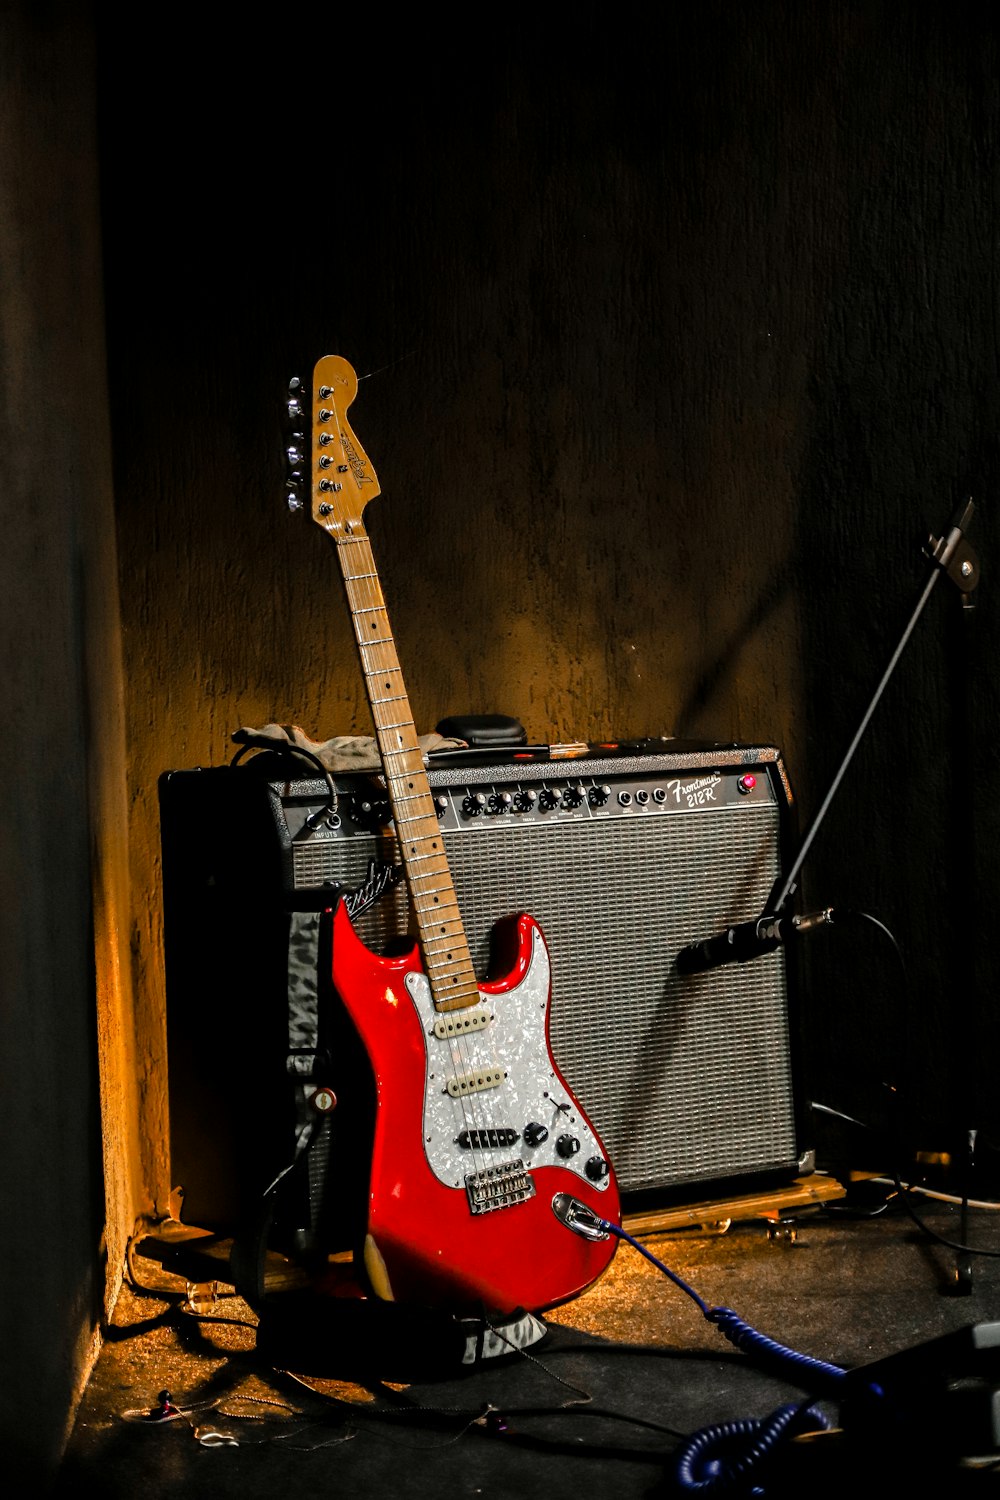 Guitarra eléctrica Stratocaster roja y blanca